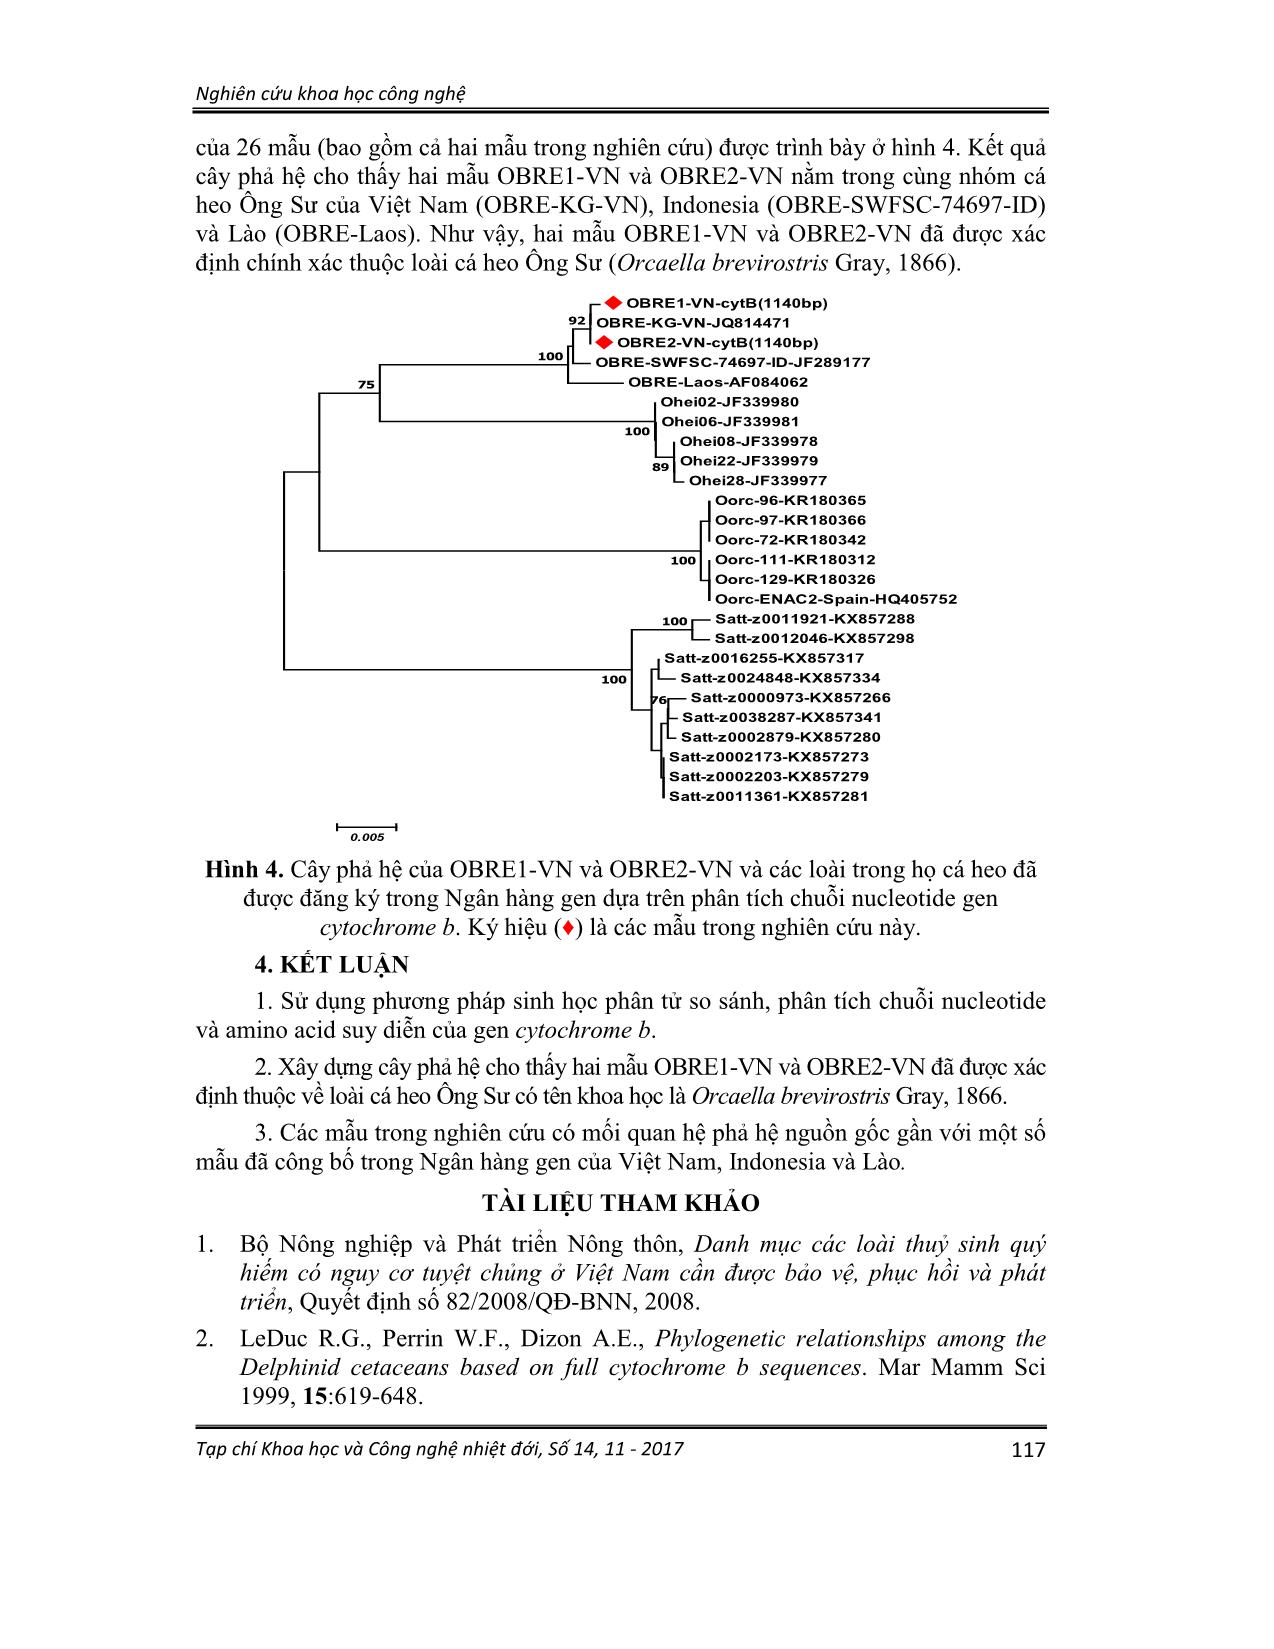 Xác định trình tự gen mã hóa cytochrome B của hệ gen TY thể và mối quan hệ di truyền của loài cá heo ông sư (orcaella brevirostris gray, 1866) vùng biển Kiên giang, Việt Nam trang 7